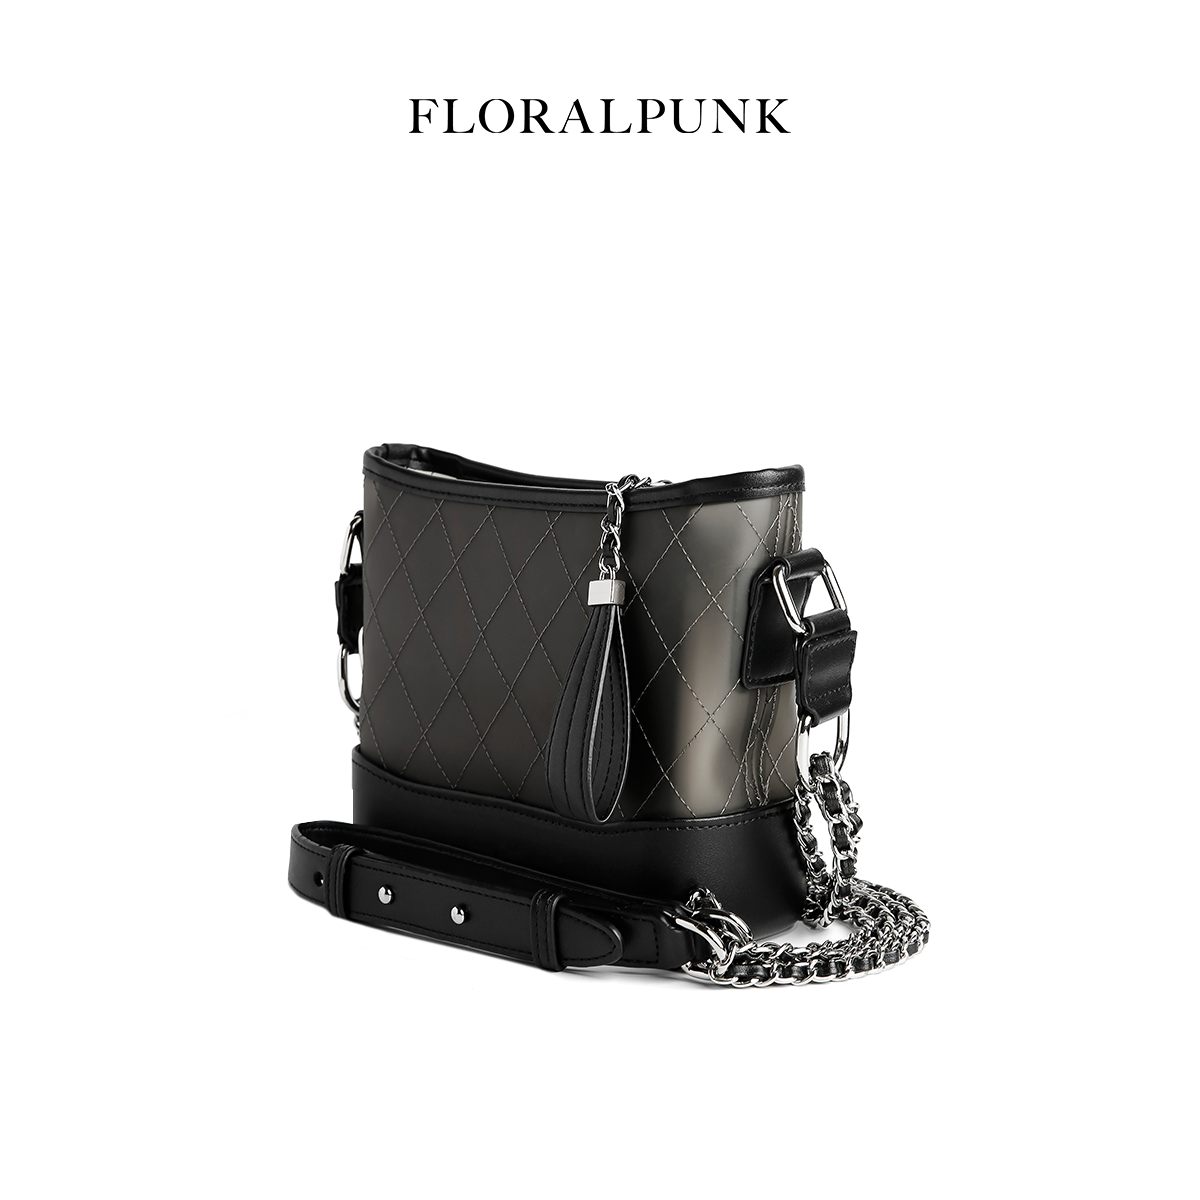 Túi xách Floralpunk Colette Bag - Black